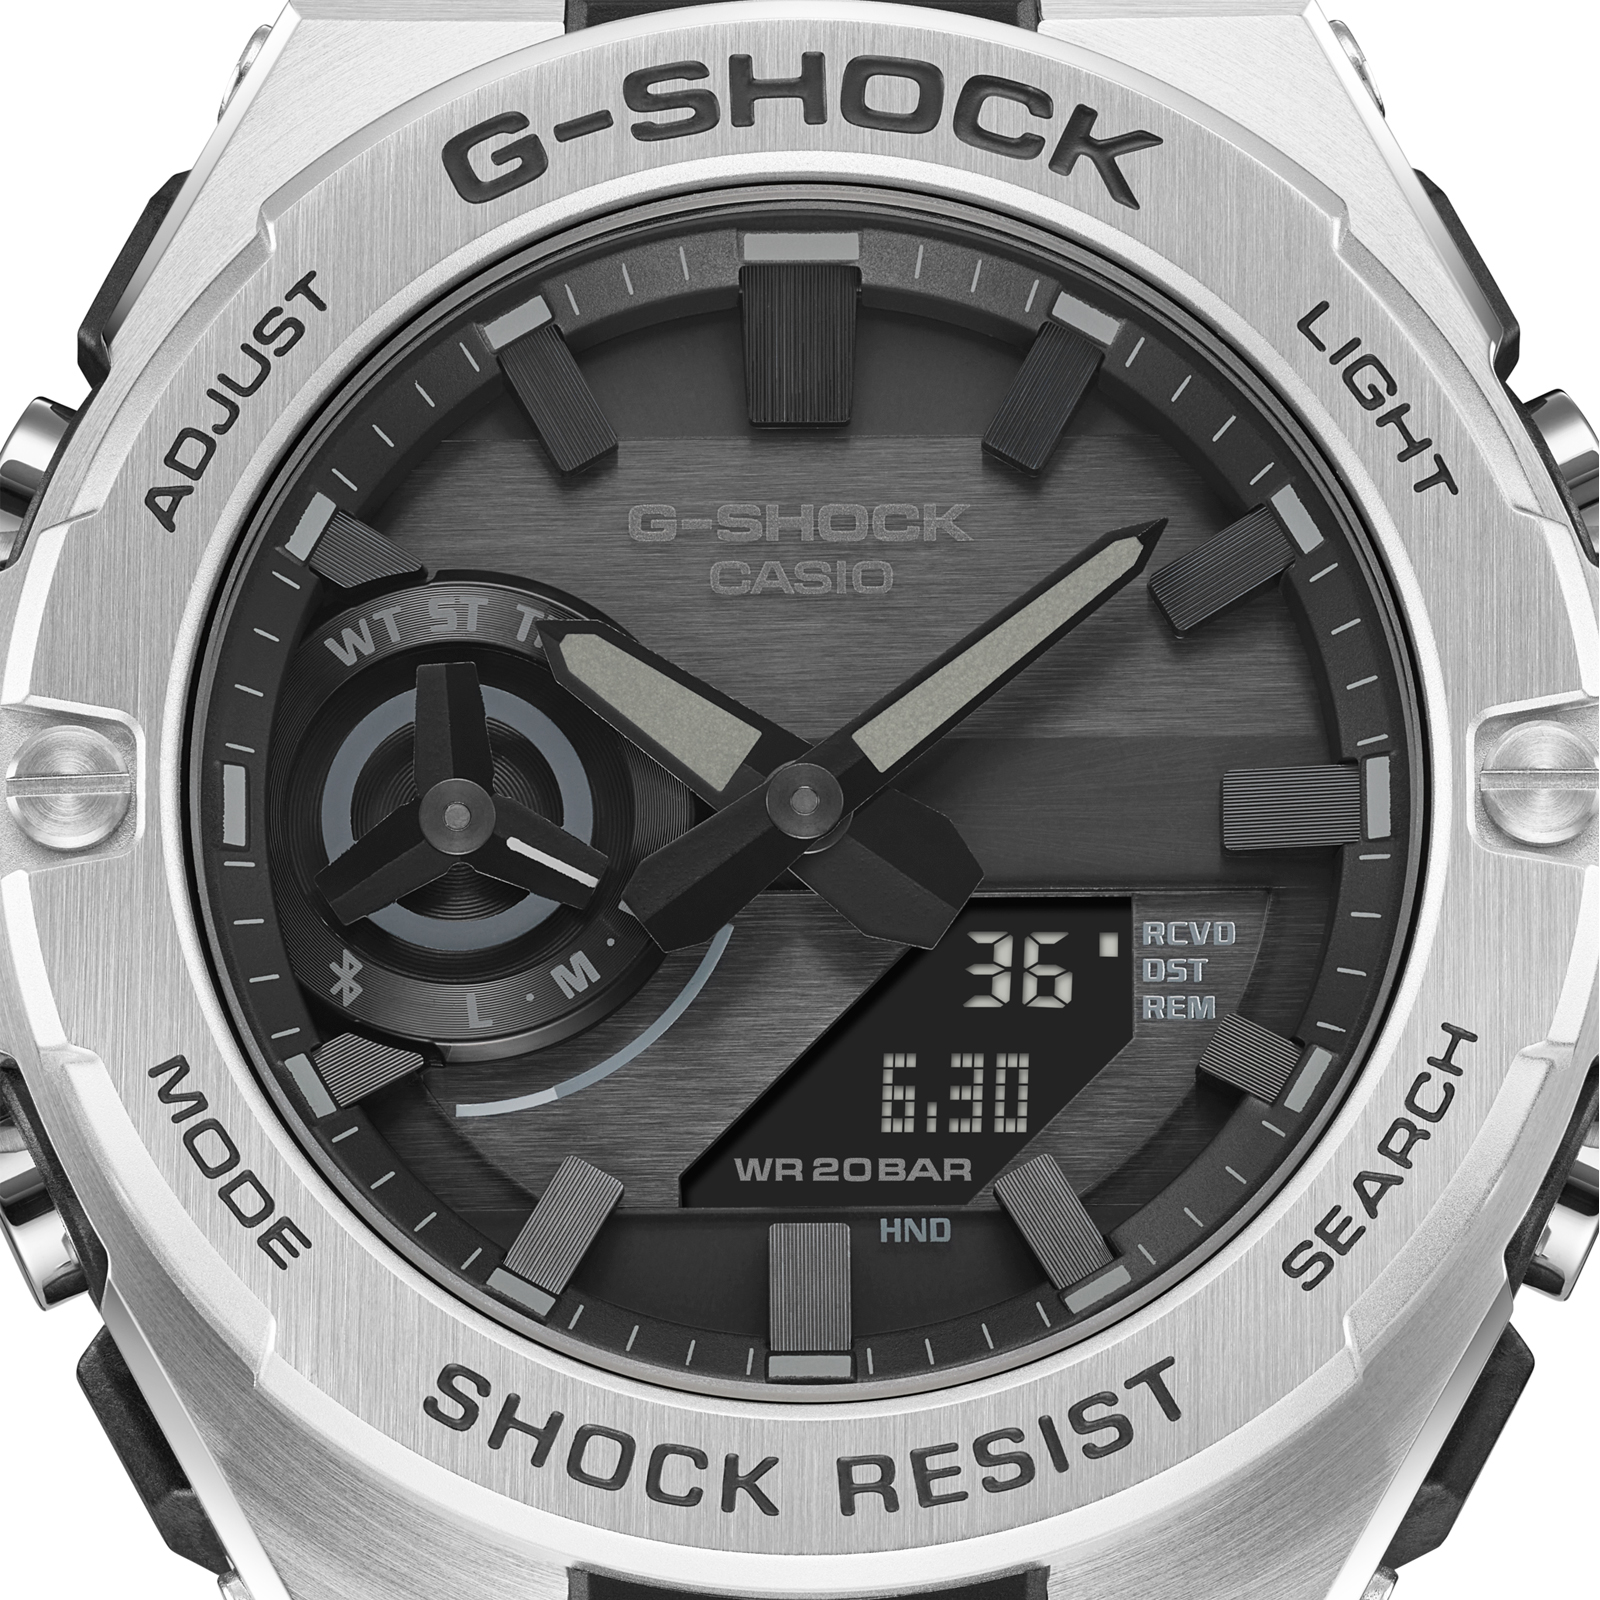 Reloj G-SHOCK GST-B500D-1A1 Acero Hombre Plateado